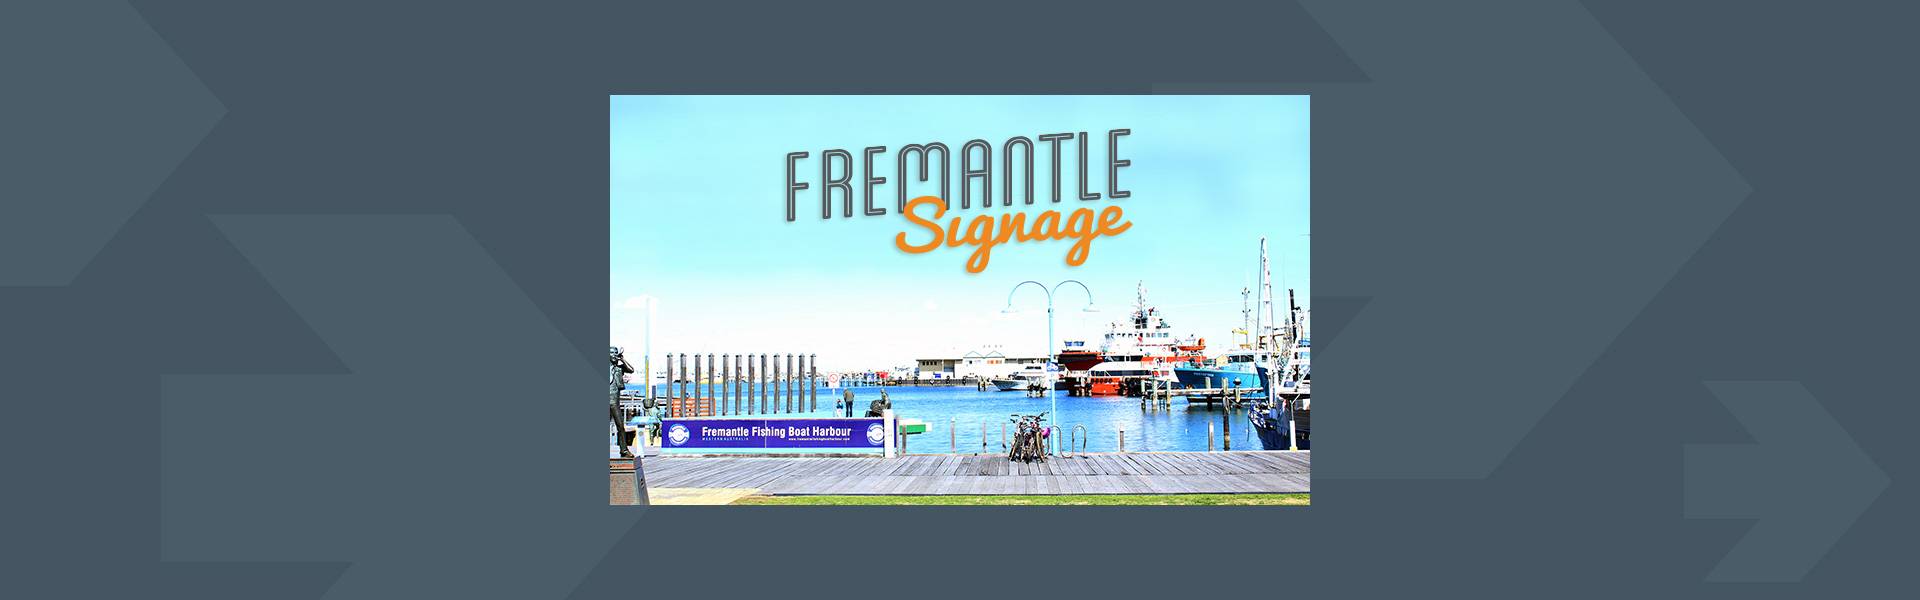 Fremantle Signage